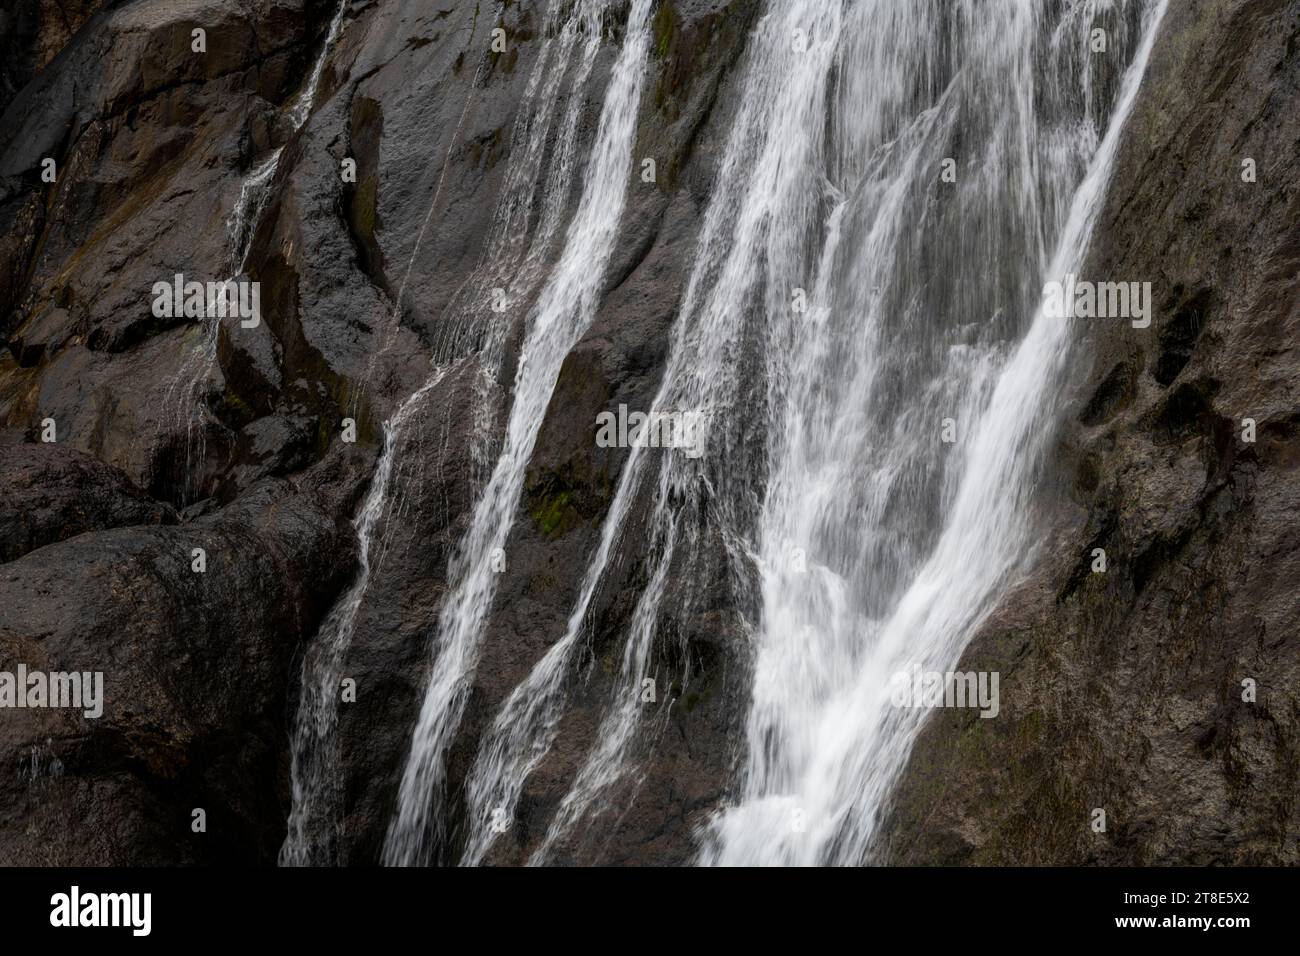 Aber Falls ein dramatischer Wasserfall am Rande der Carneddau Mountains im Snowdonia-Nationalpark in Nordwales. Stockfoto